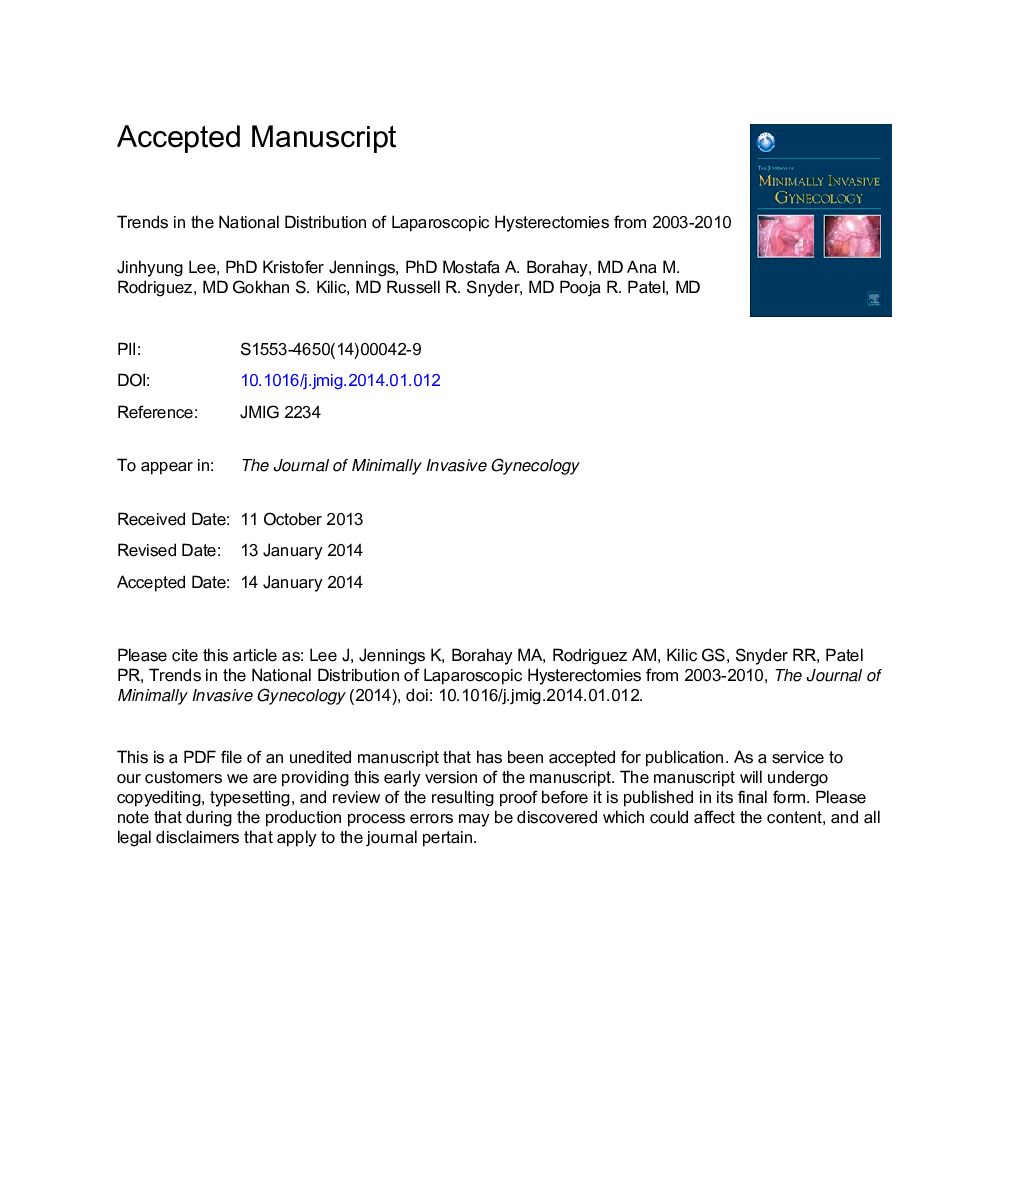 روند توزیع ملی هیسترکتومی لاپاروسکوپی از سال 2003 تا 2010 